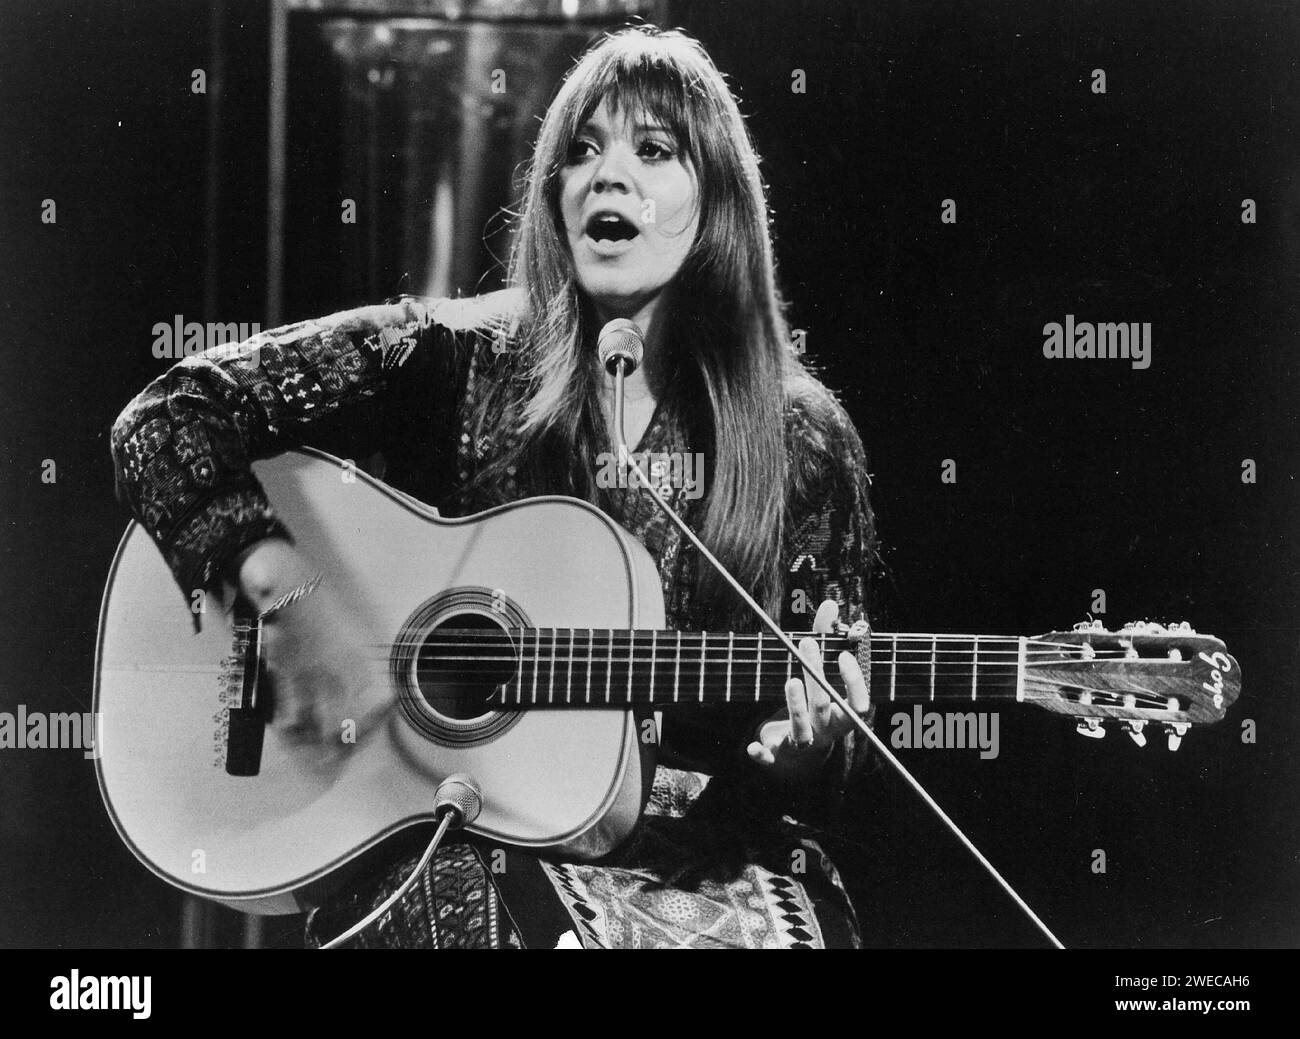 24 gennaio 2024: MELANIE, (Melanie Anne Safka-Schekeryk, professionalmente conosciuta come Melanie o Melanie Safka) la cantante che si è esibita a Woodstock nel 1969 e ha avuto grandi successi pop con 'Brand New Key' e 'Lay Down (Candles in the Rain)' nei primi anni '70, è morta all'età di 76 anni. FOTO SCATTATA IN DATA: CIRCA 1970. Data e luogo sconosciuti. MELANIE in concerto. (Immagine di credito: © Globe Photos/ZUMA Wire) SOLO USO EDITORIALE! Non per USO commerciale! Foto Stock